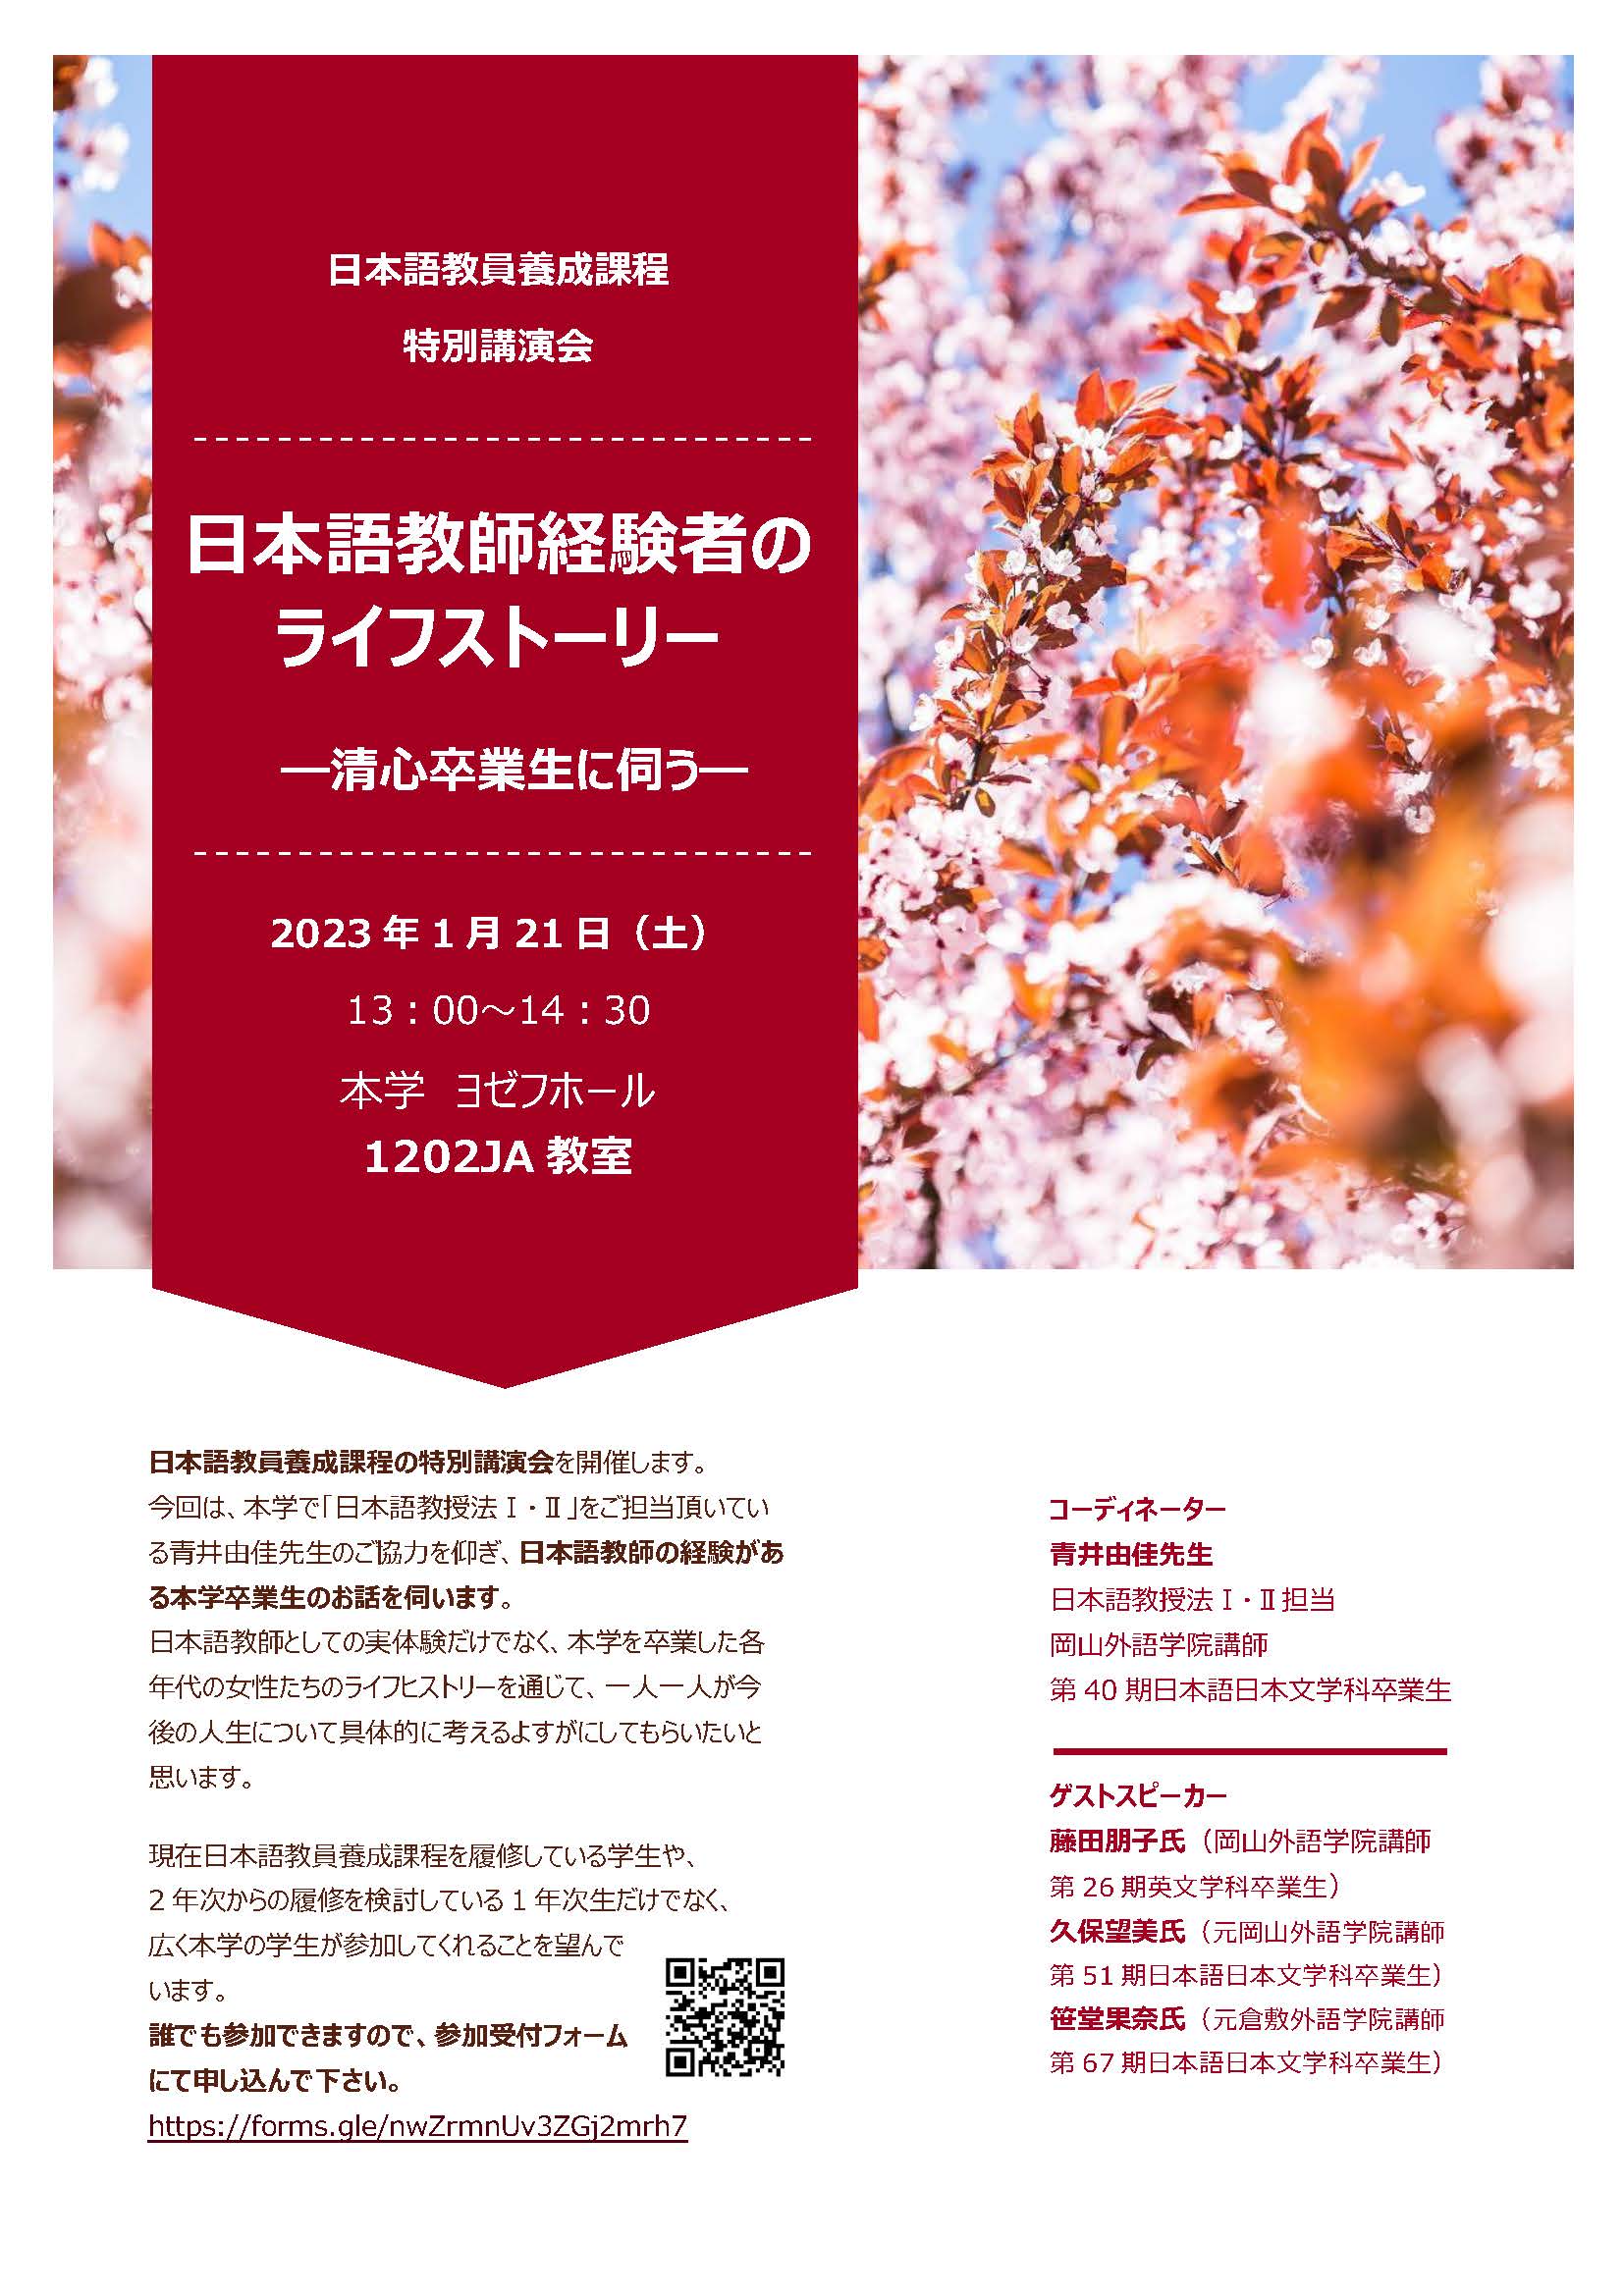 特別講演会「日本語教師経験者のライフストーリー」チラシ